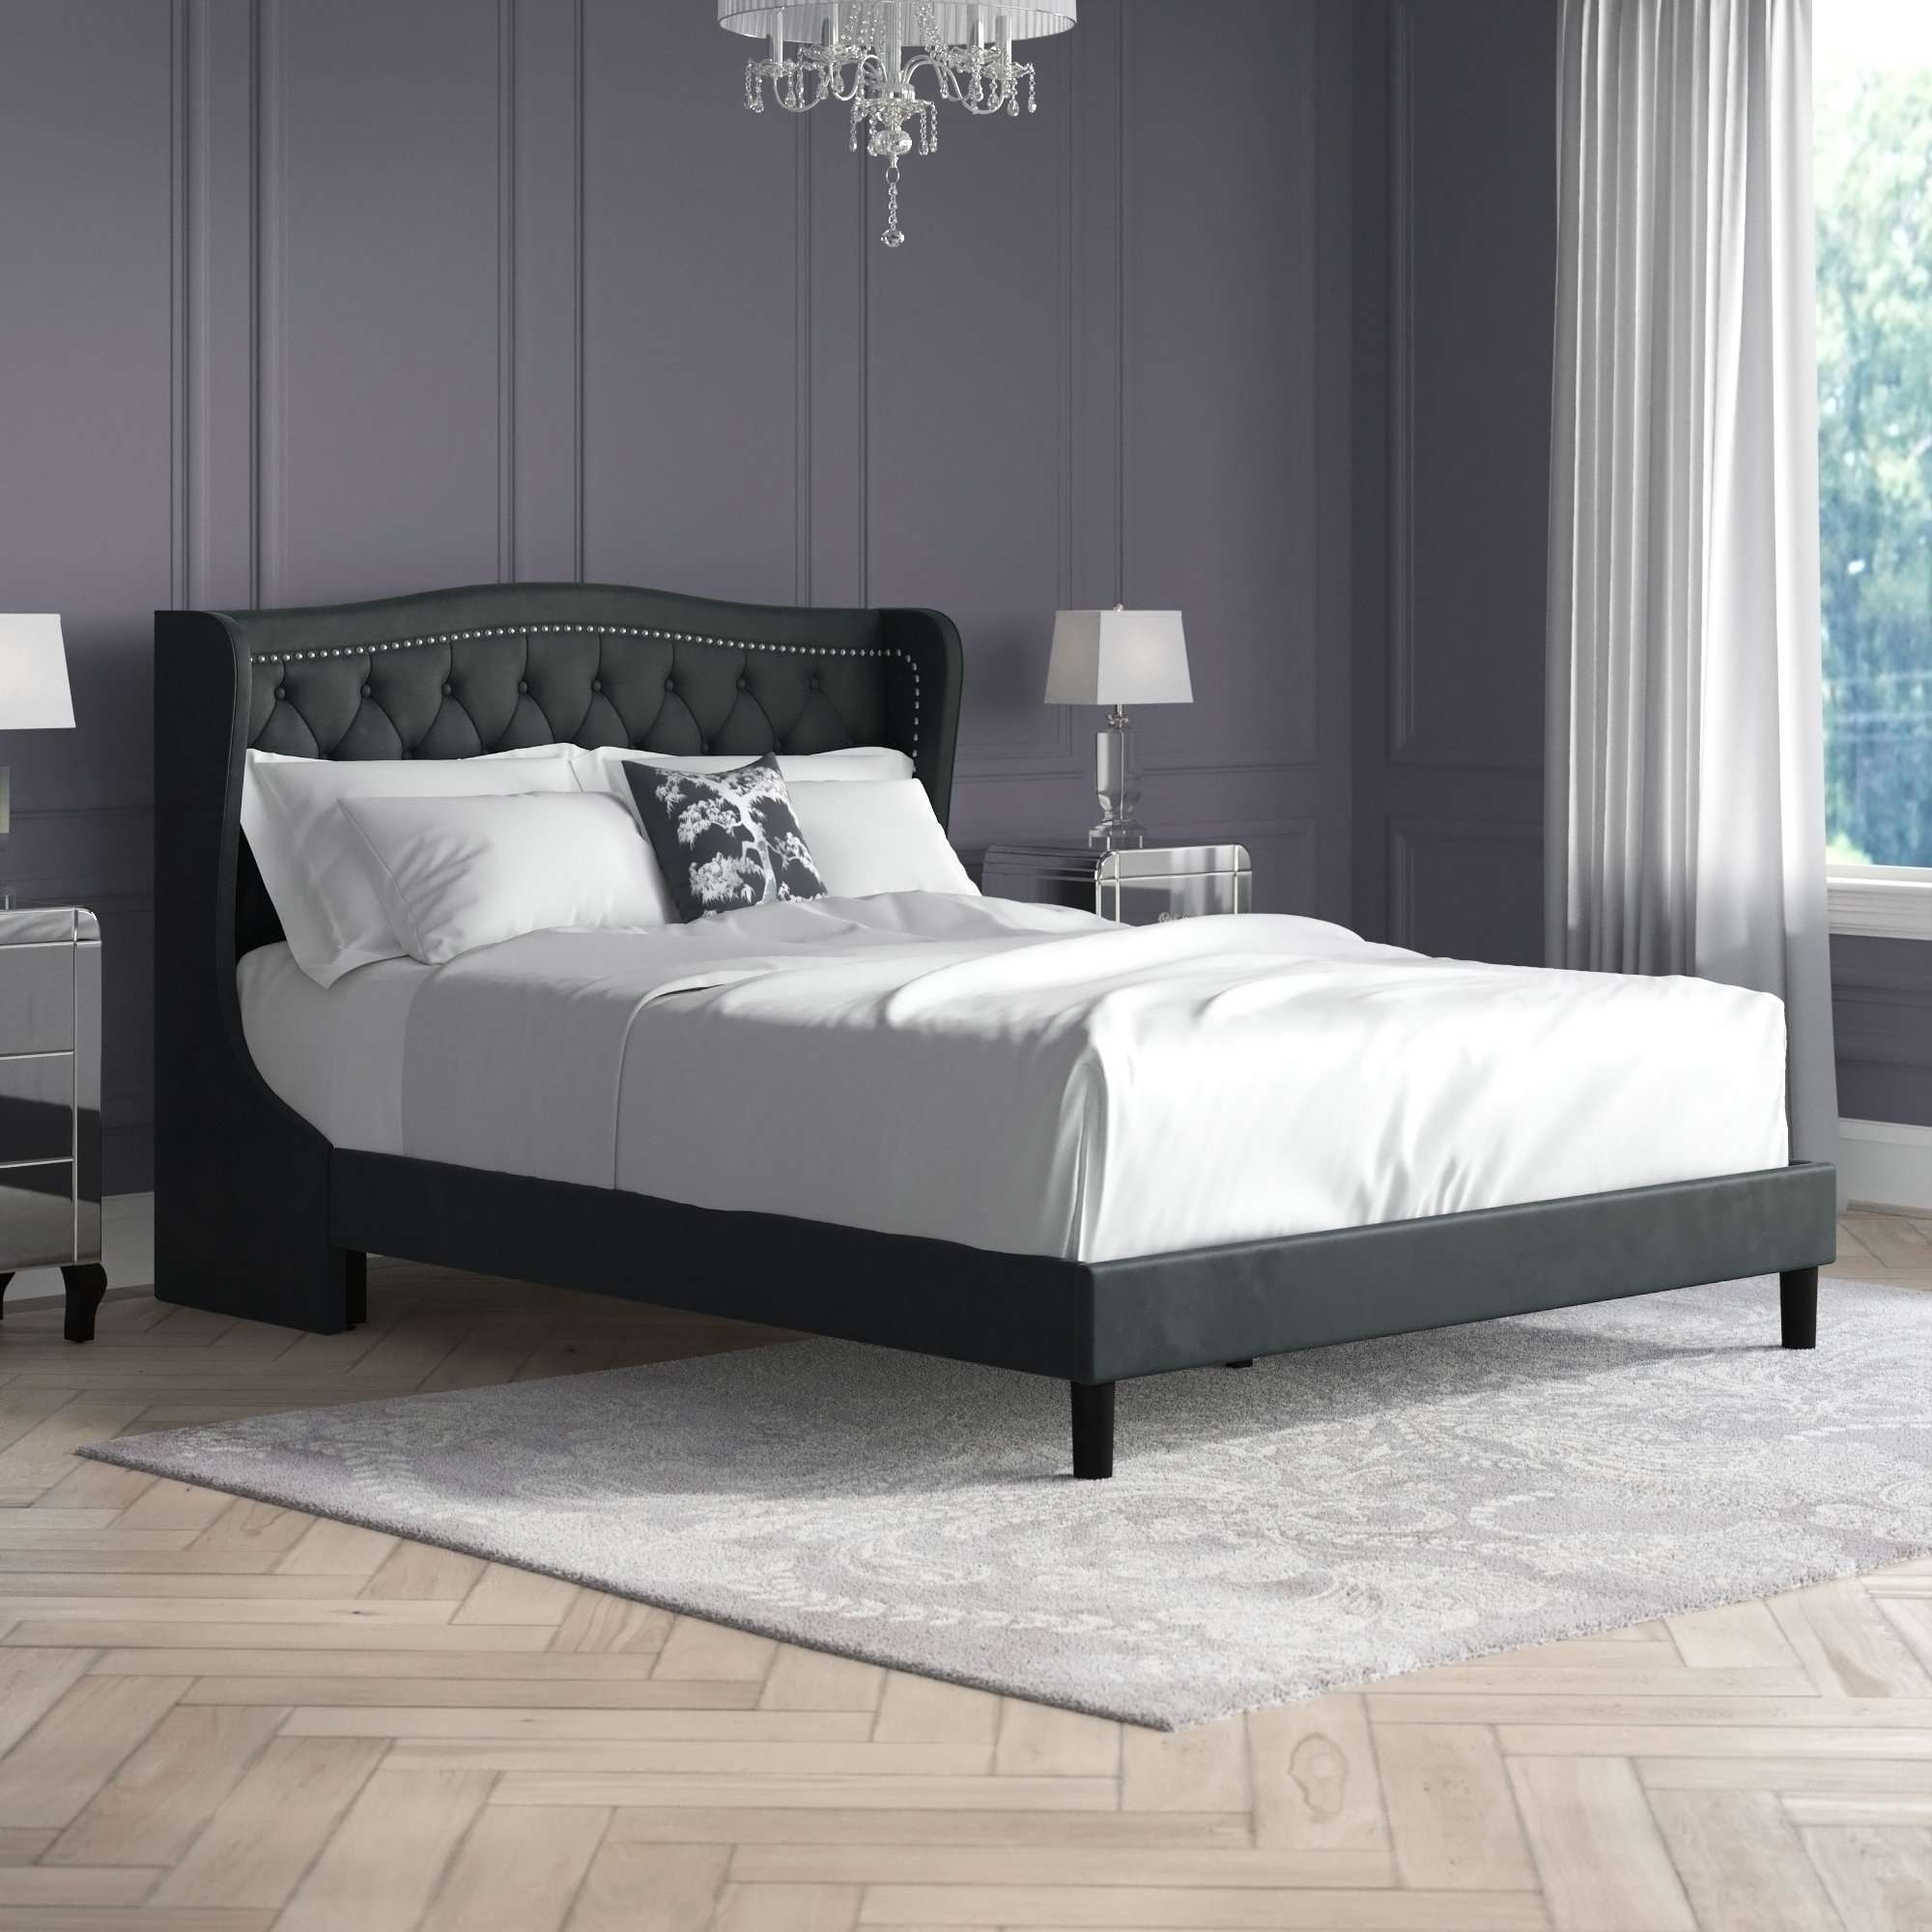 https://assets.wfcdn.com/im/11712576/compr-r85/2287/228762209/lyndhur-453-h-tufted-velvet-upholstered-low-profile-standard-bed-platform-bed-frame.jpg